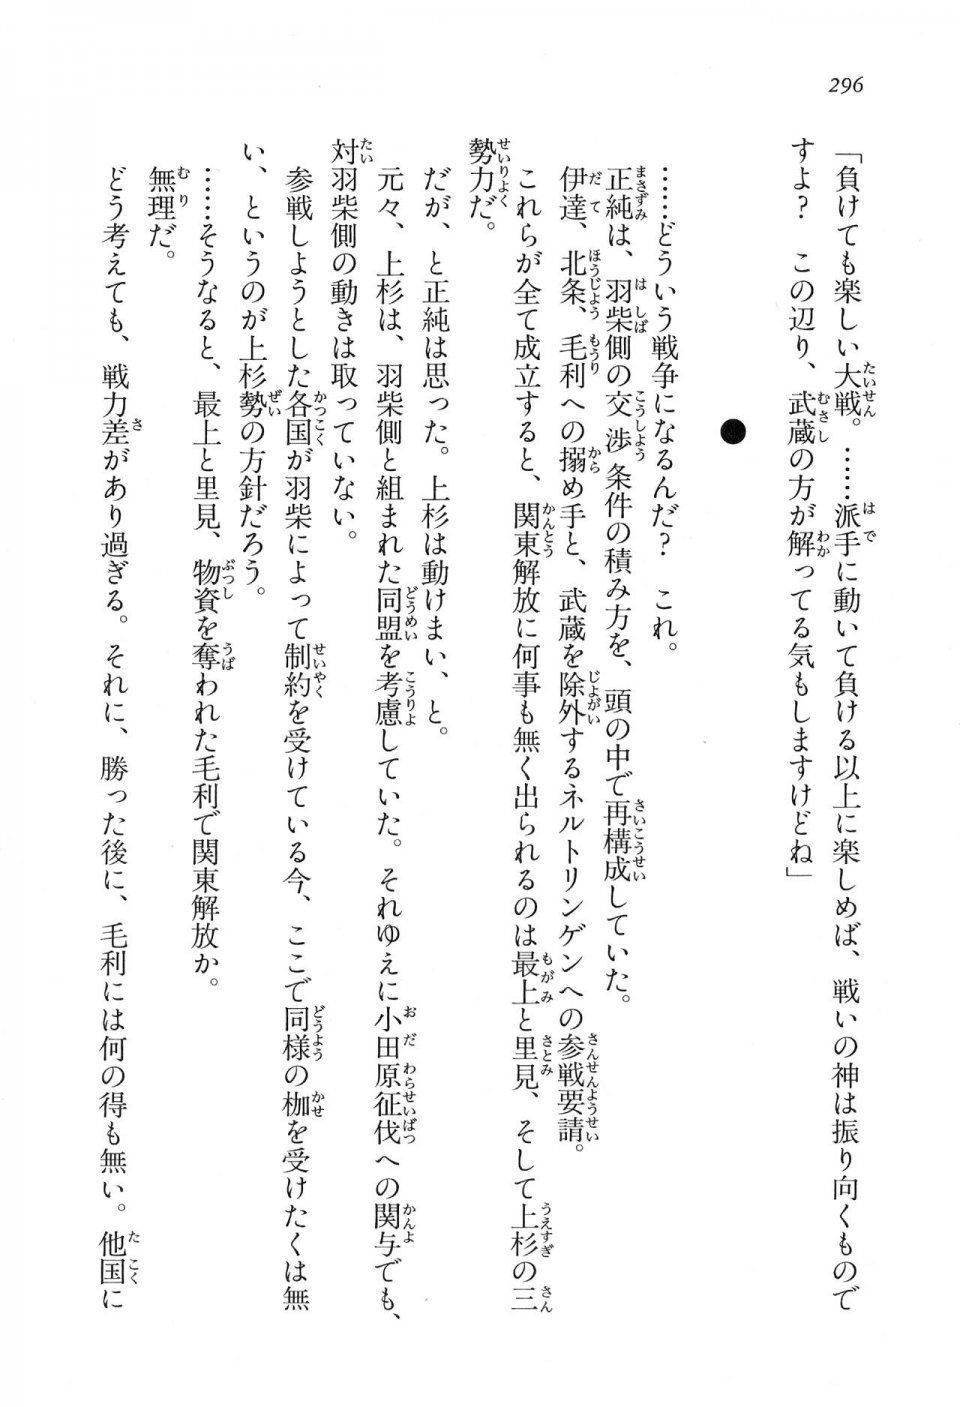 Kyoukai Senjou no Horizon LN Vol 16(7A) - Photo #296